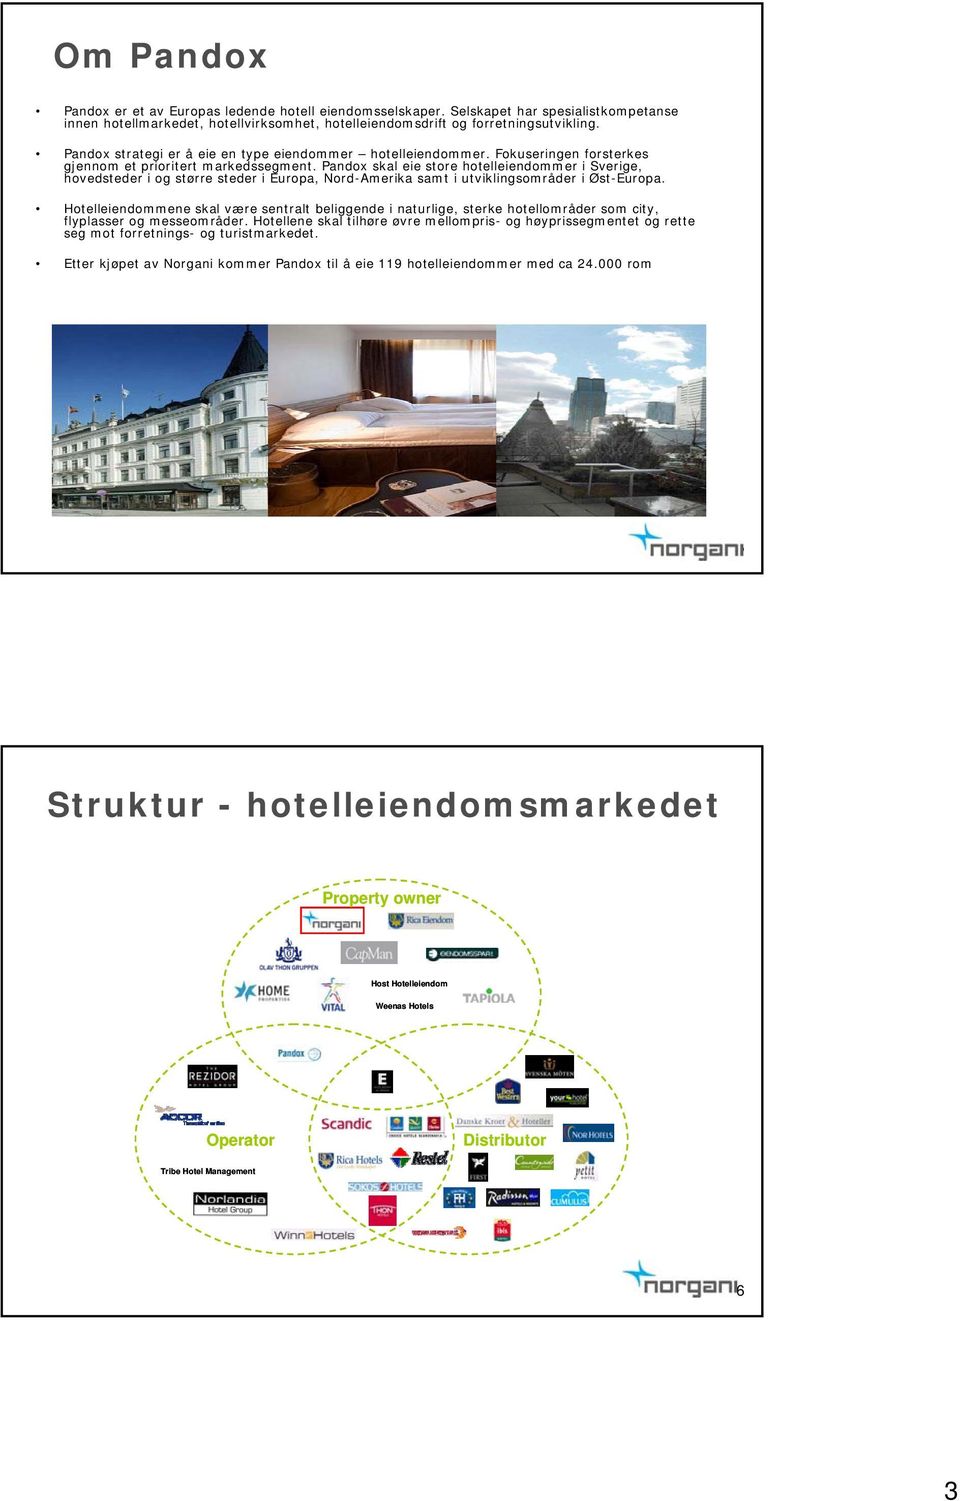 Pandox skal eie store hotelleiendommer i Sverige, hovedsteder i og større steder i Europa, Nord-Amerika samt i utviklingsområder i Øst-Europa.